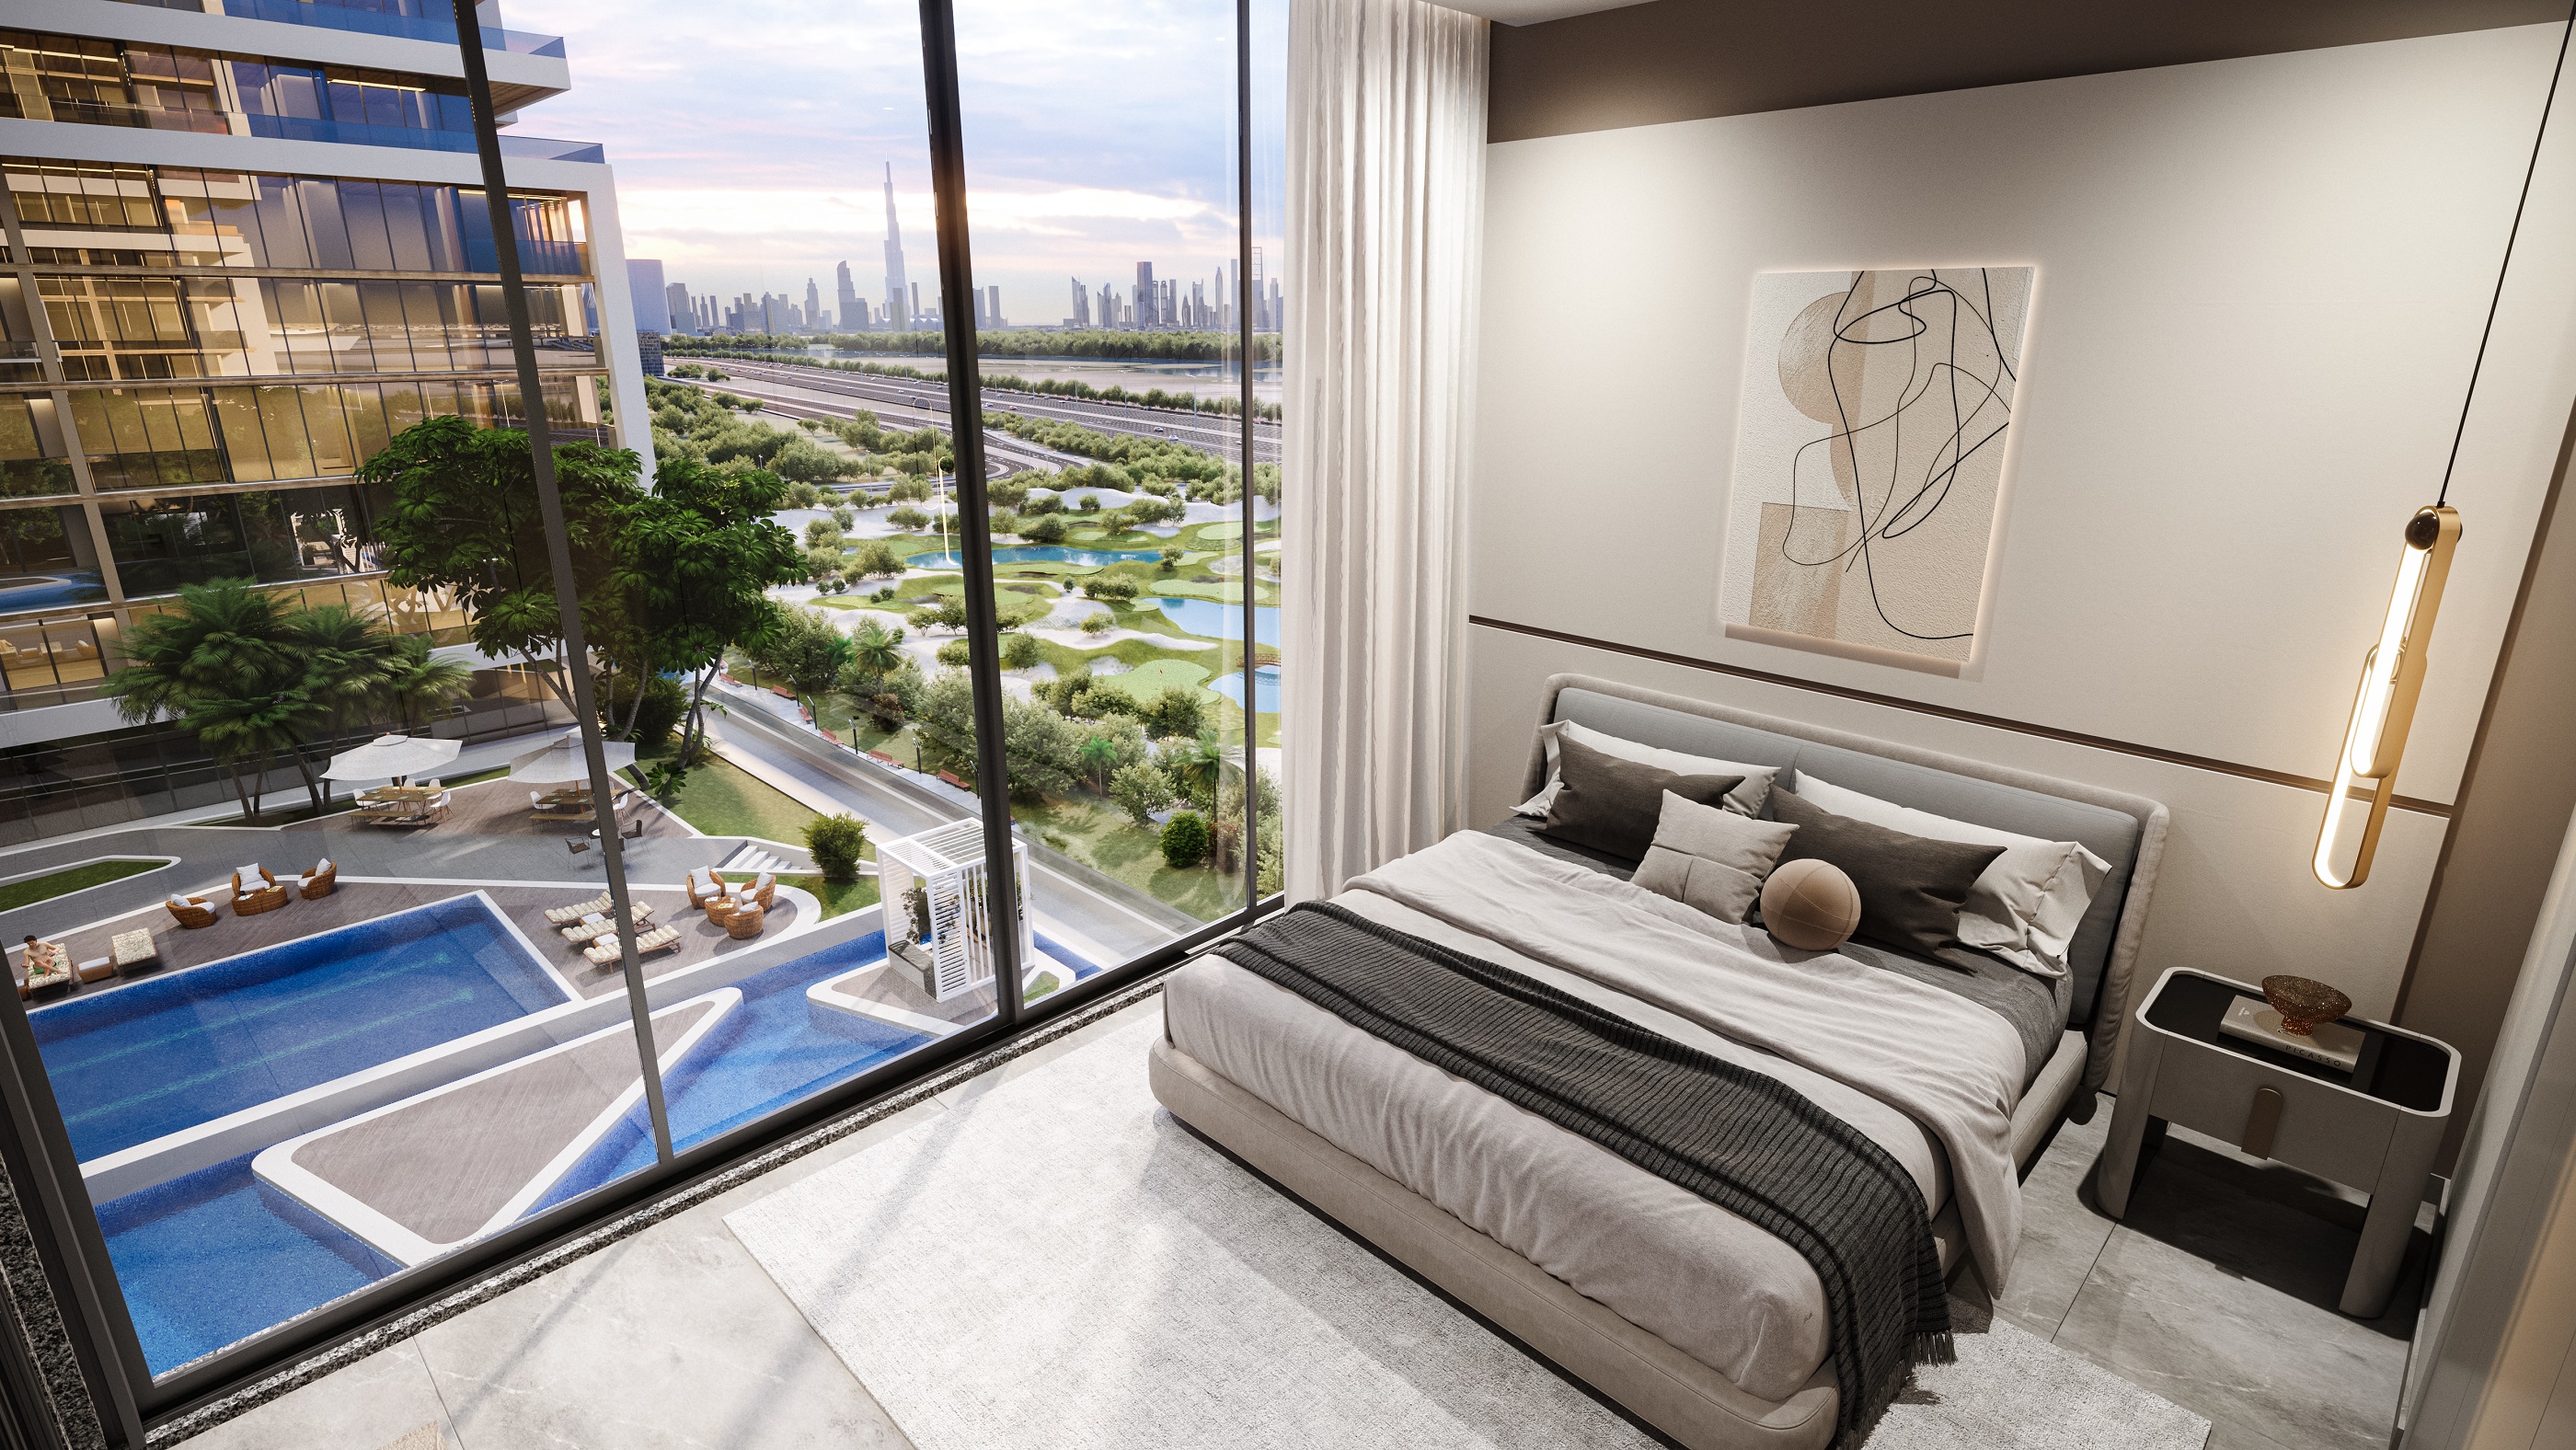 فرصتك لتملّك شقة أحلامك بالتقسيط المريح في أفخم مشاريع دبي ومناطقها الراقية